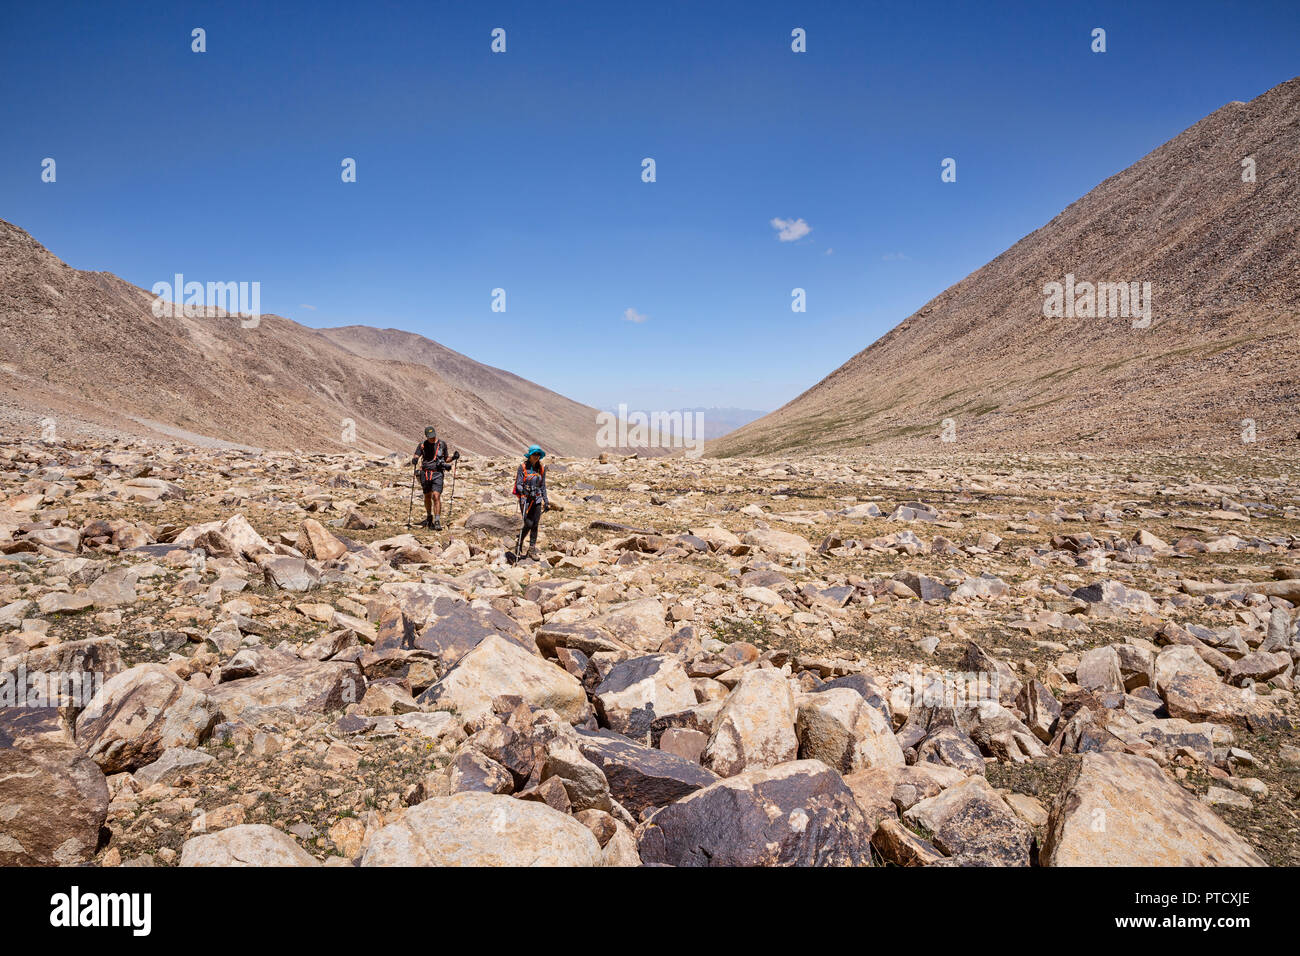 Spektakuläre high-altitude Trek von Keng Shiber Kara Jilga Zorkul, See und Wanderungen in den Schatten der großen afghanischen Pamir Pamir Mounta Stockfoto